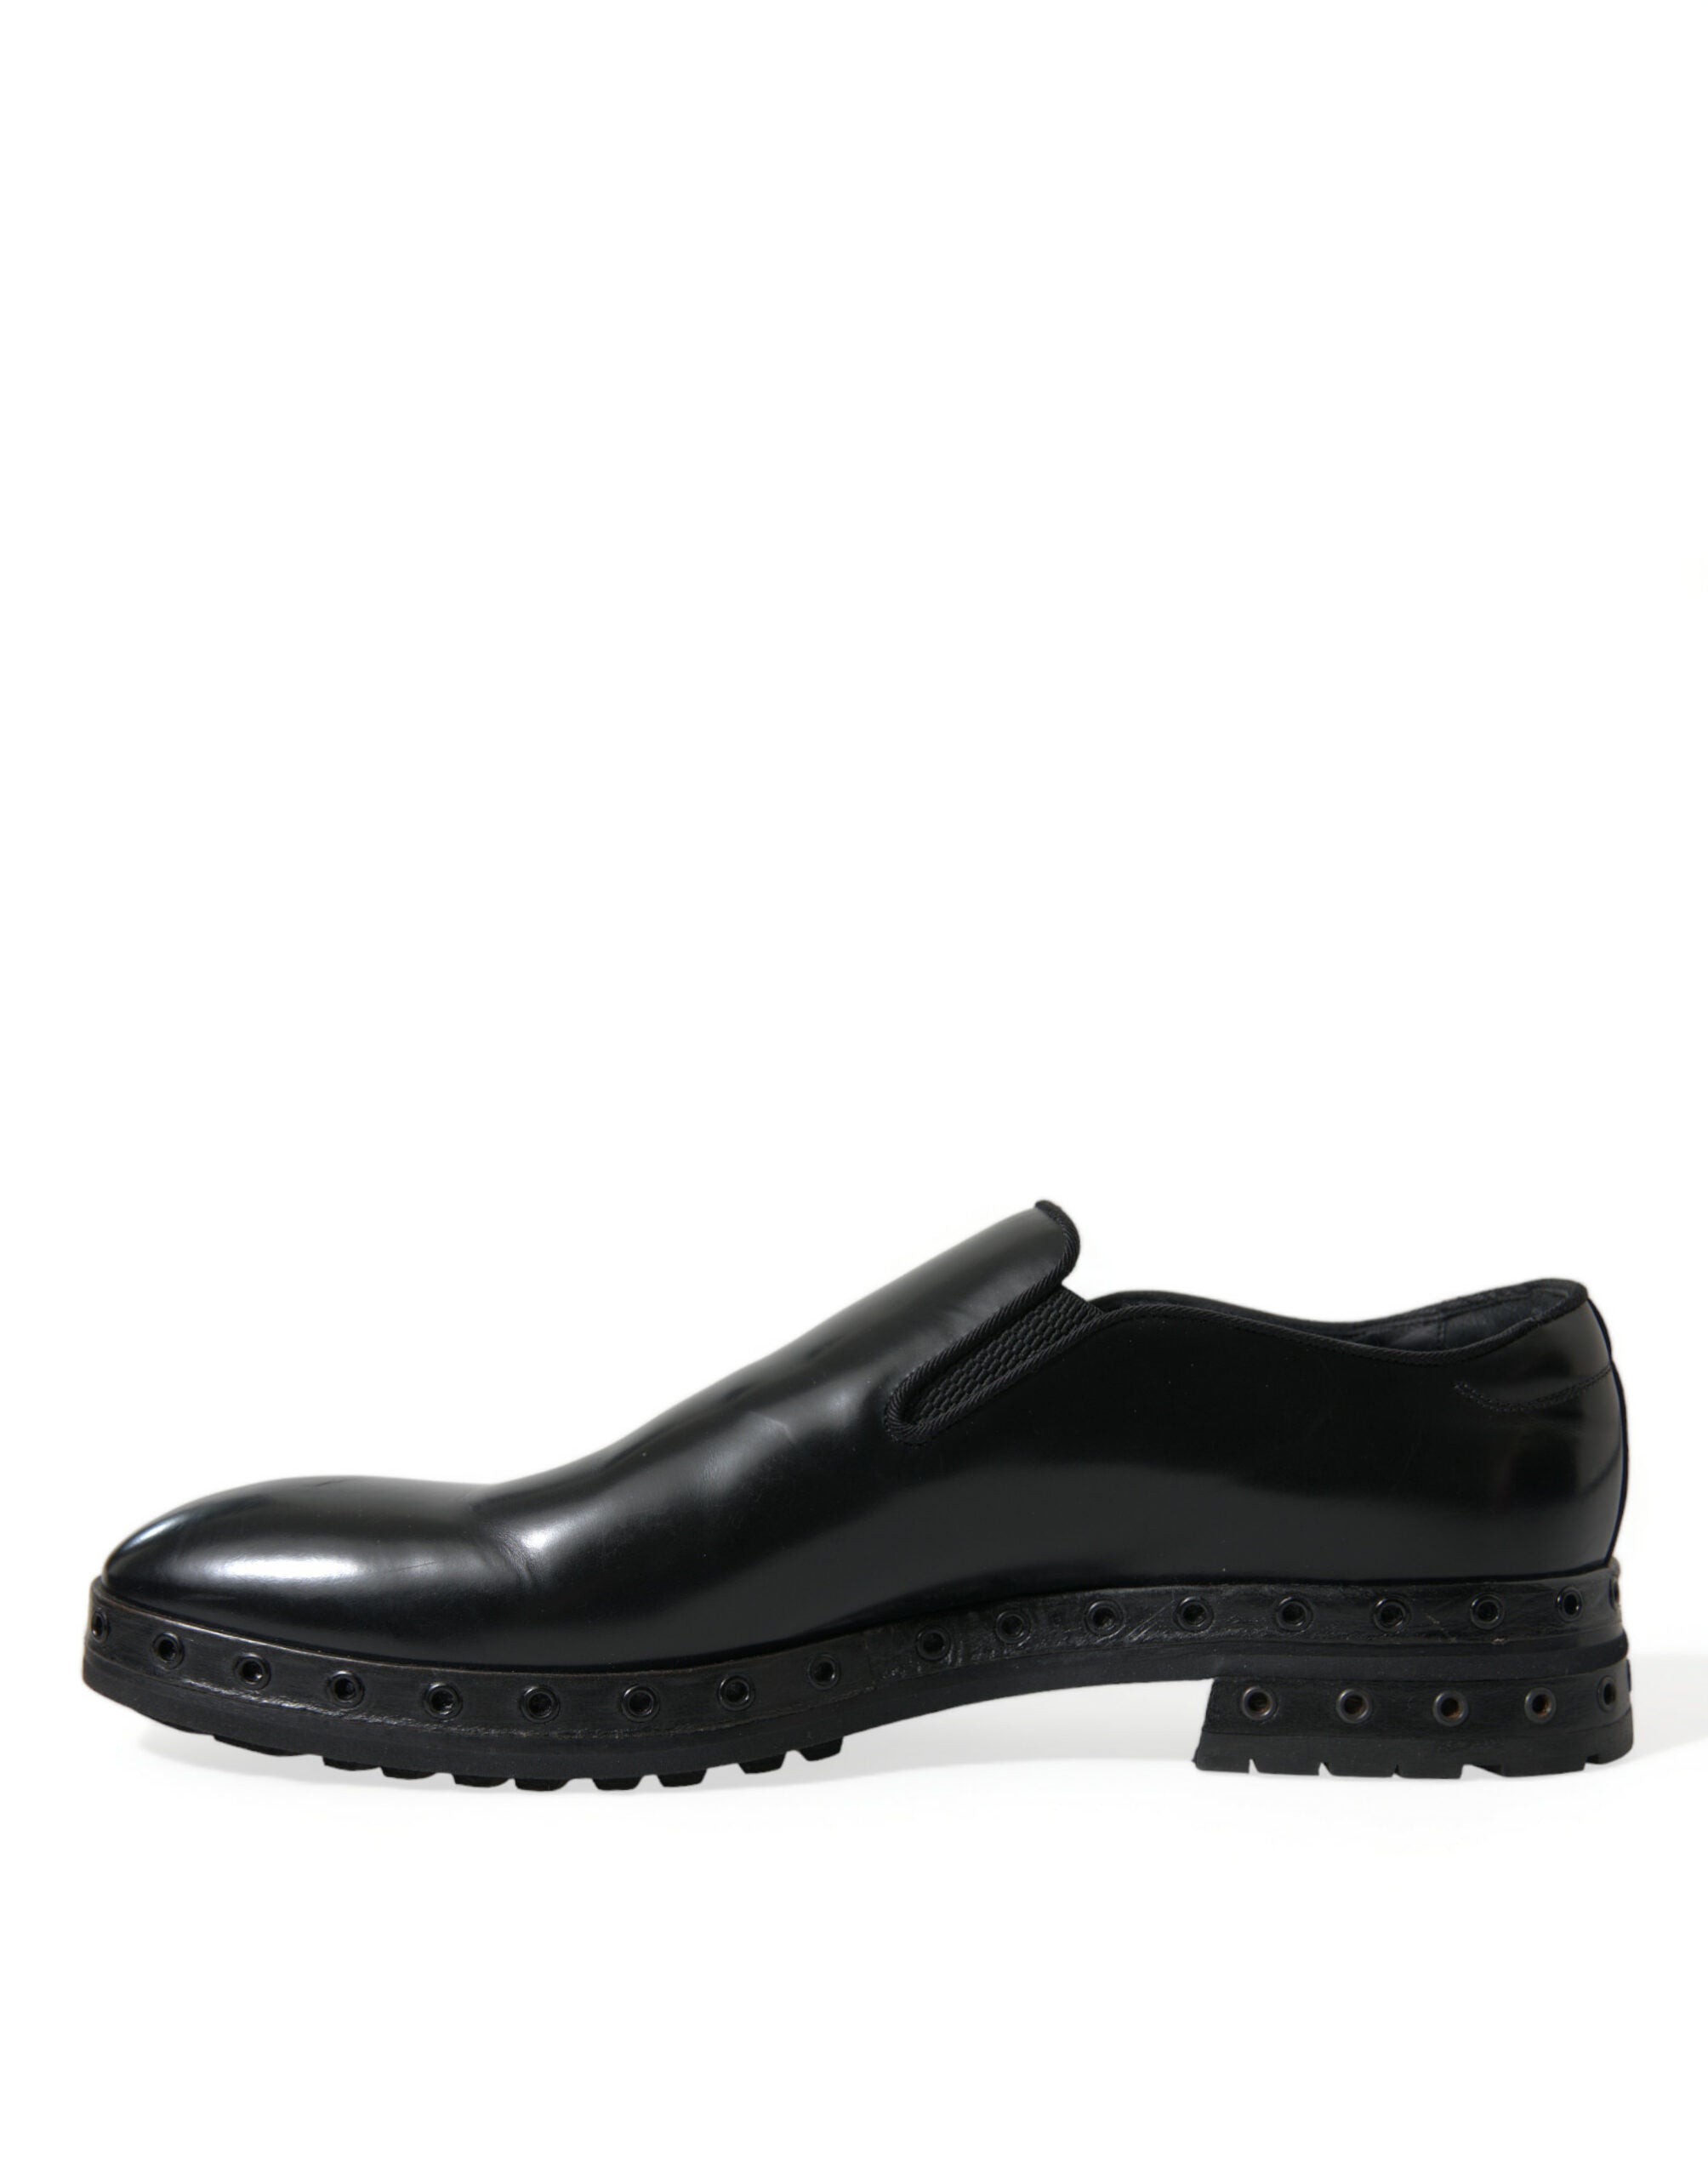 Dolce & Gabbana Zapatos de vestir mocasines de cuero negro con tachuelas